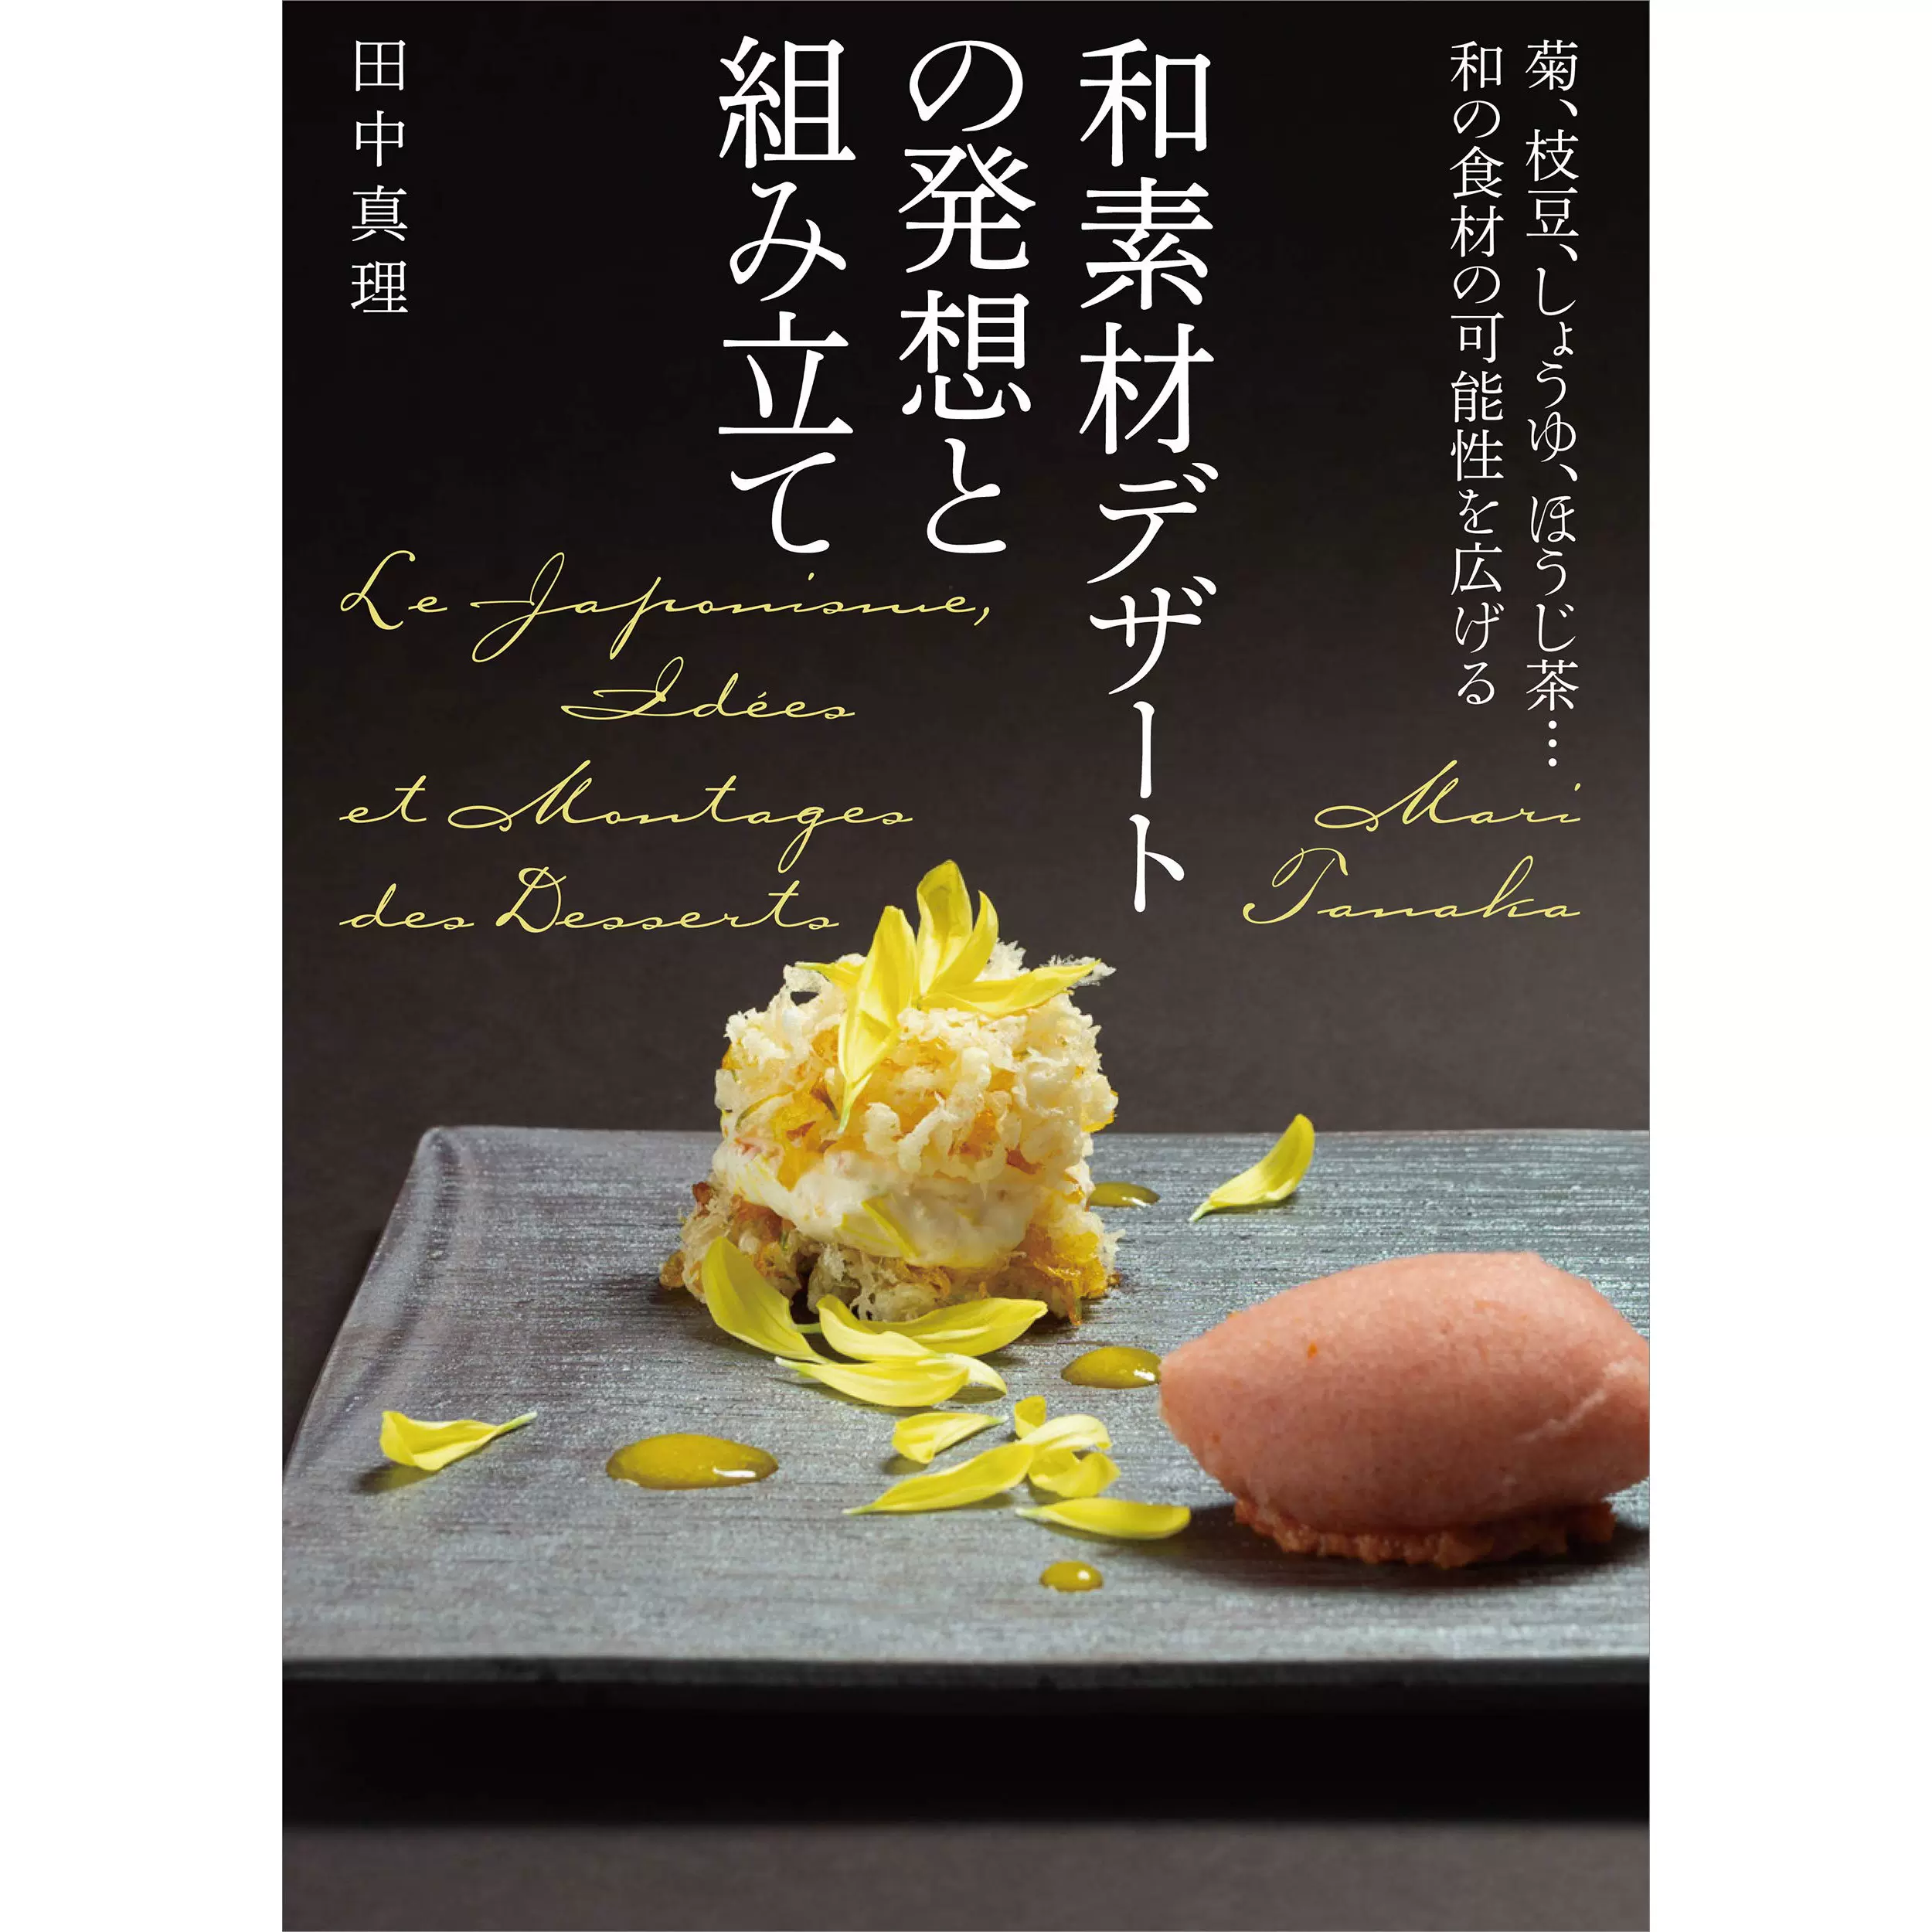 现货和素材デザートの発想と組み田中真理餐厅甜点制作技巧书